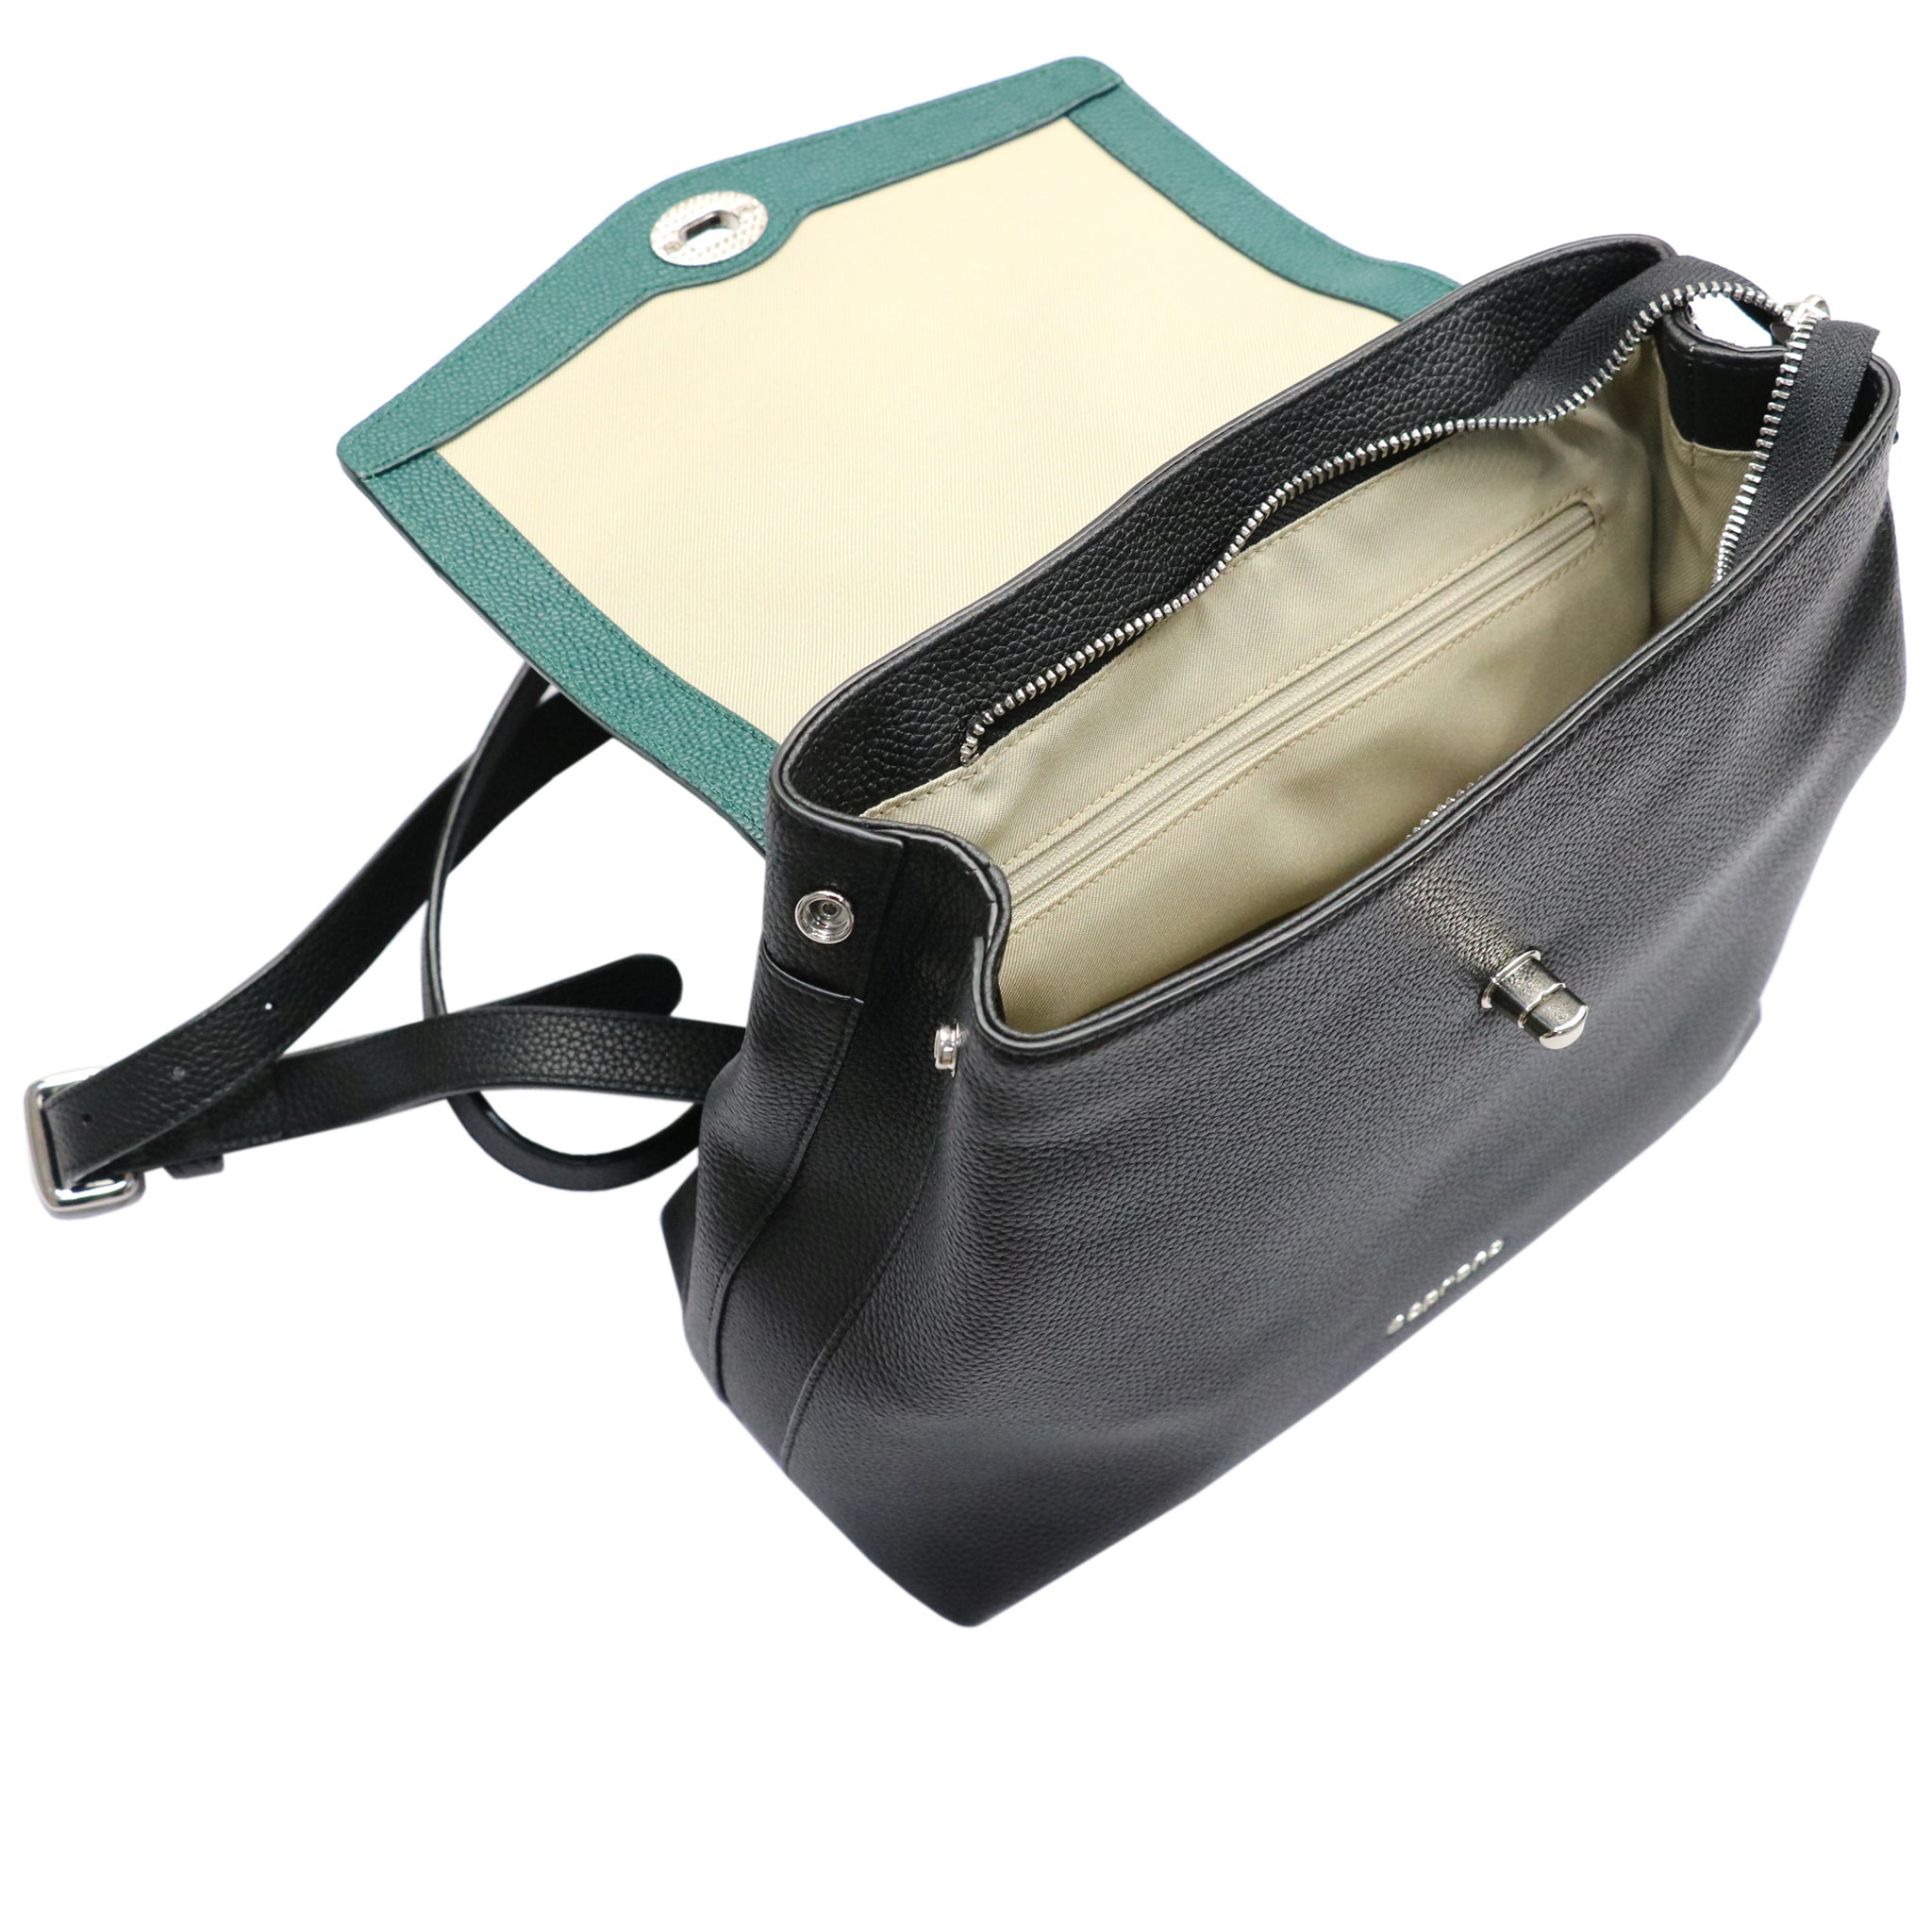 Two-tone Mini Backpack